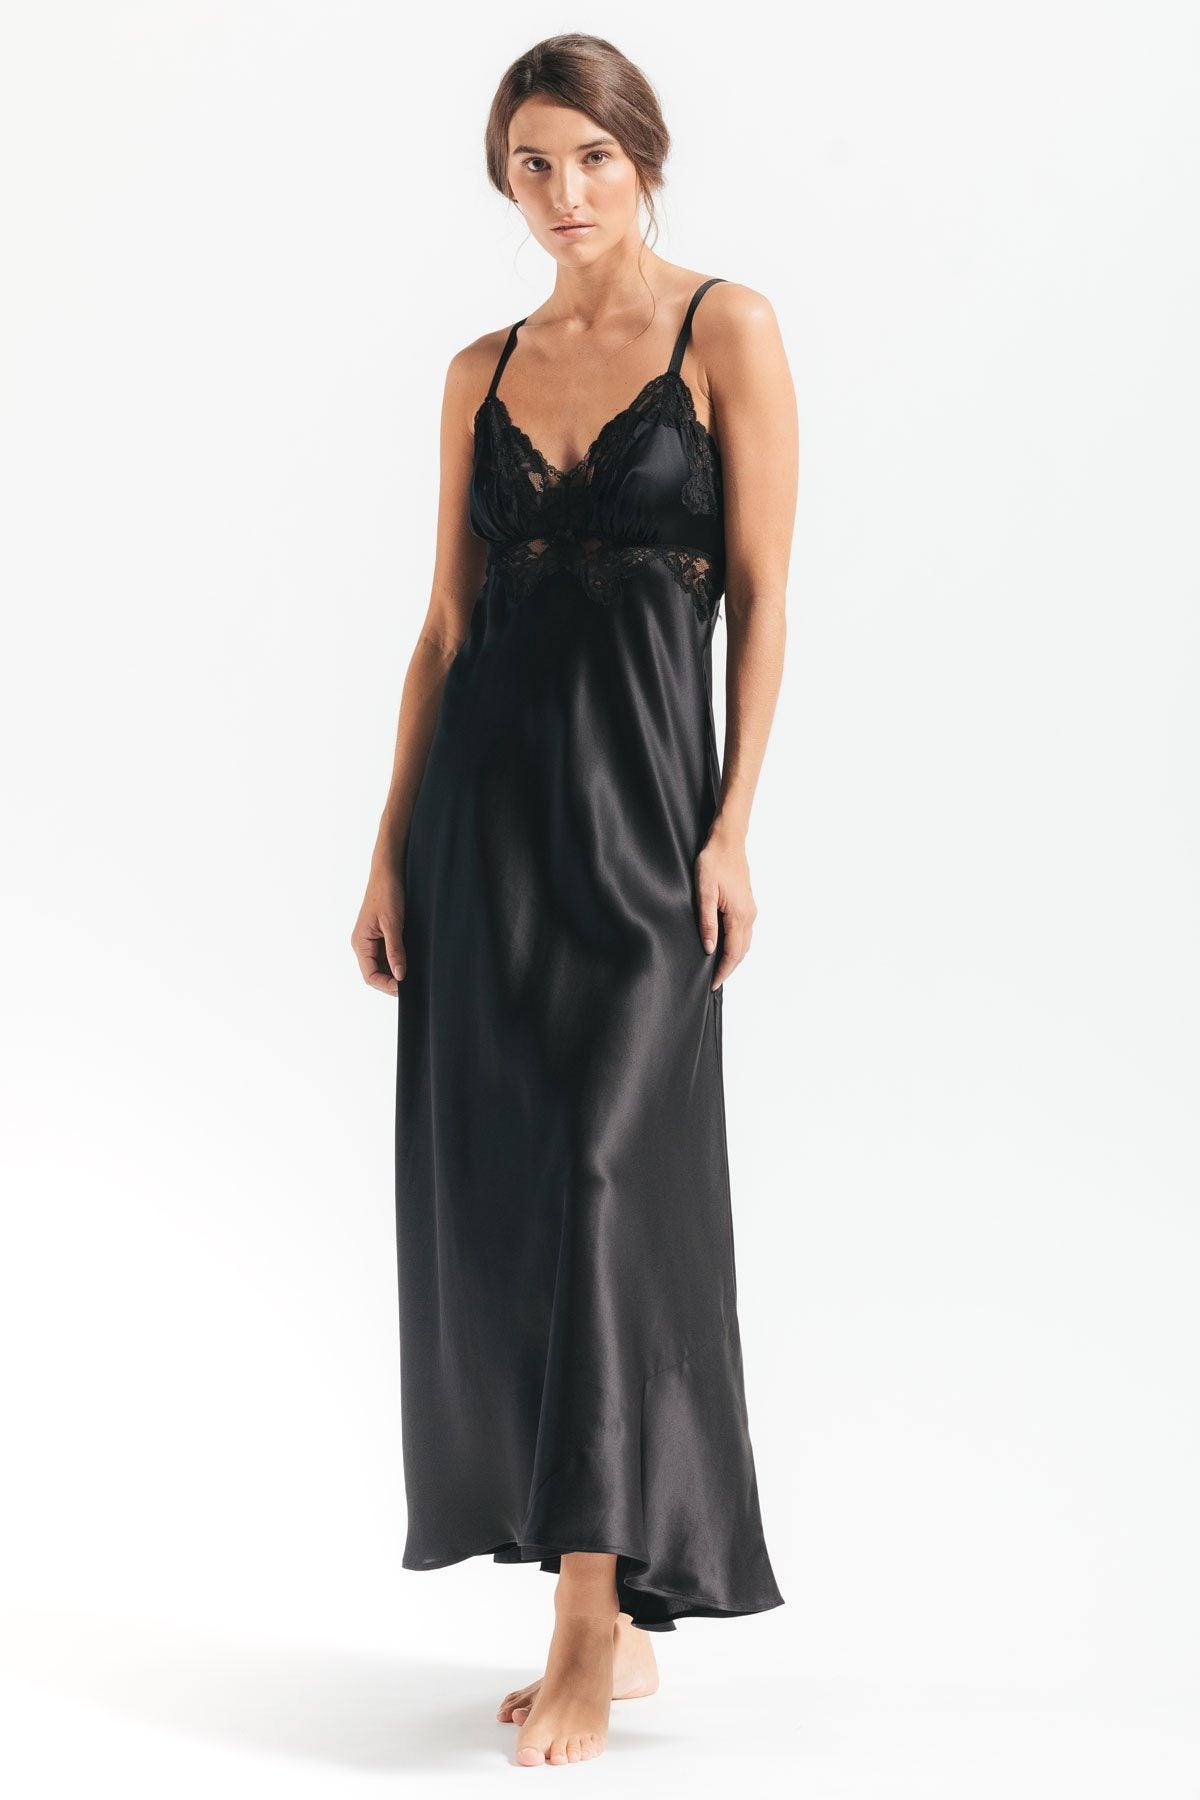 Nightdress | silky vintage nightgowns | Slip dress en satin | retro style  nightwear